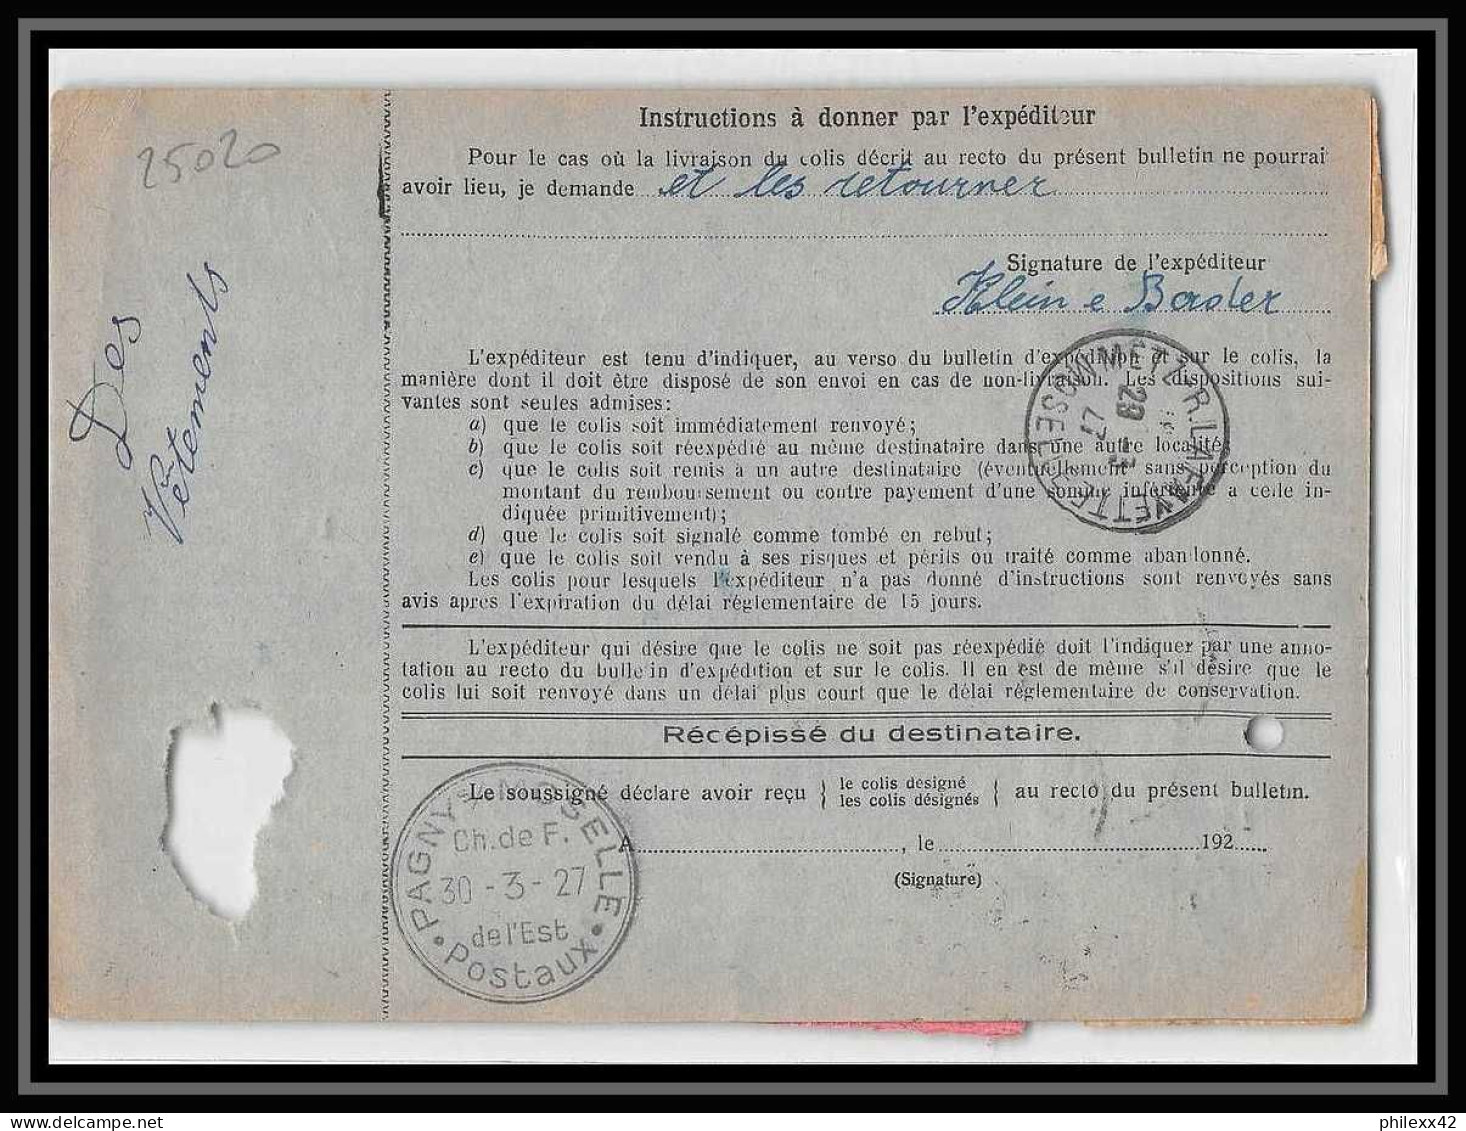 25020 Bulletin D'expédition France Colis Postaux Fiscal Haut Rhin 1927 Guebwiller Semeuse Merson 123 Valeur Déclarée - Brieven & Documenten